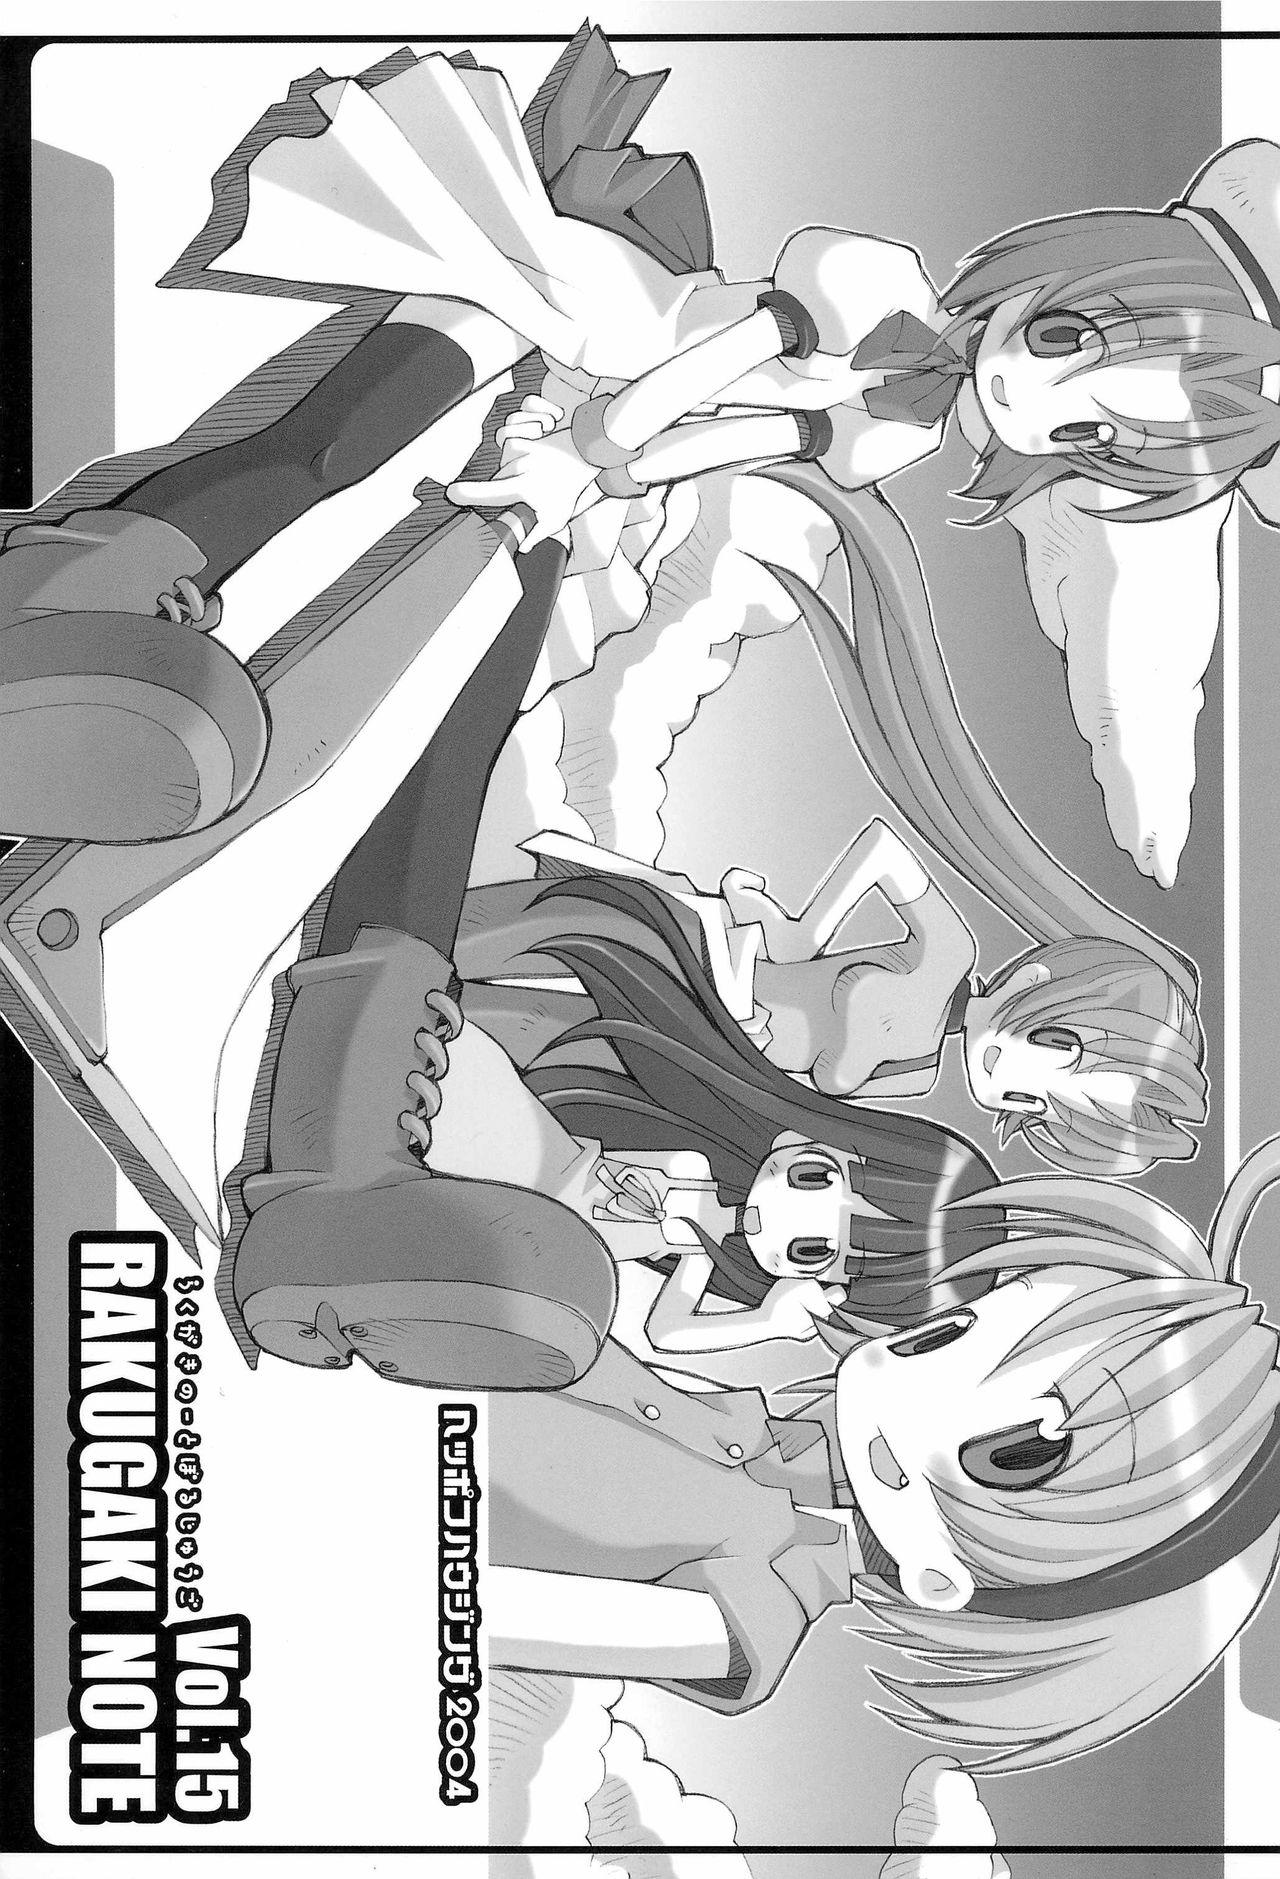 Teenager RAKUGAKI NOTE vol.15 - Higurashi no naku koro ni Climax - Picture 1